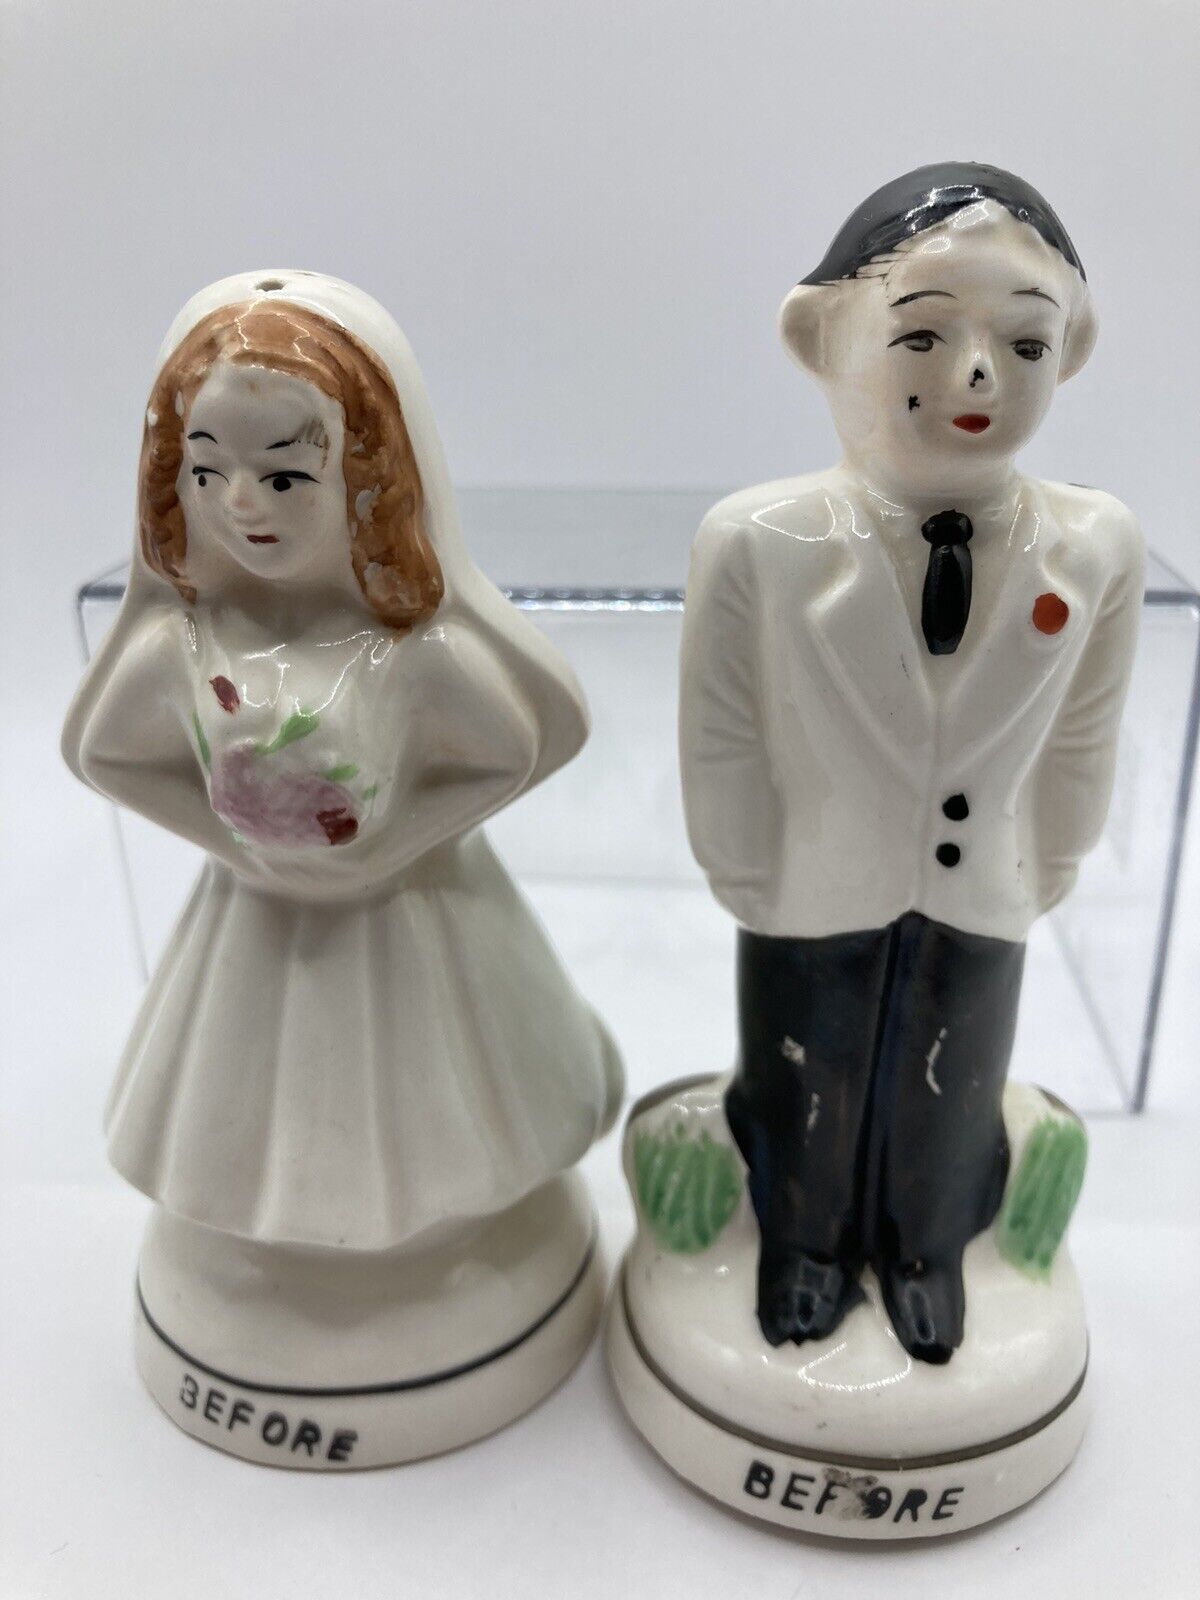 Vintage Ceramic Before & After Bride & Groom Salt & Pepper Shaker Set  Japan